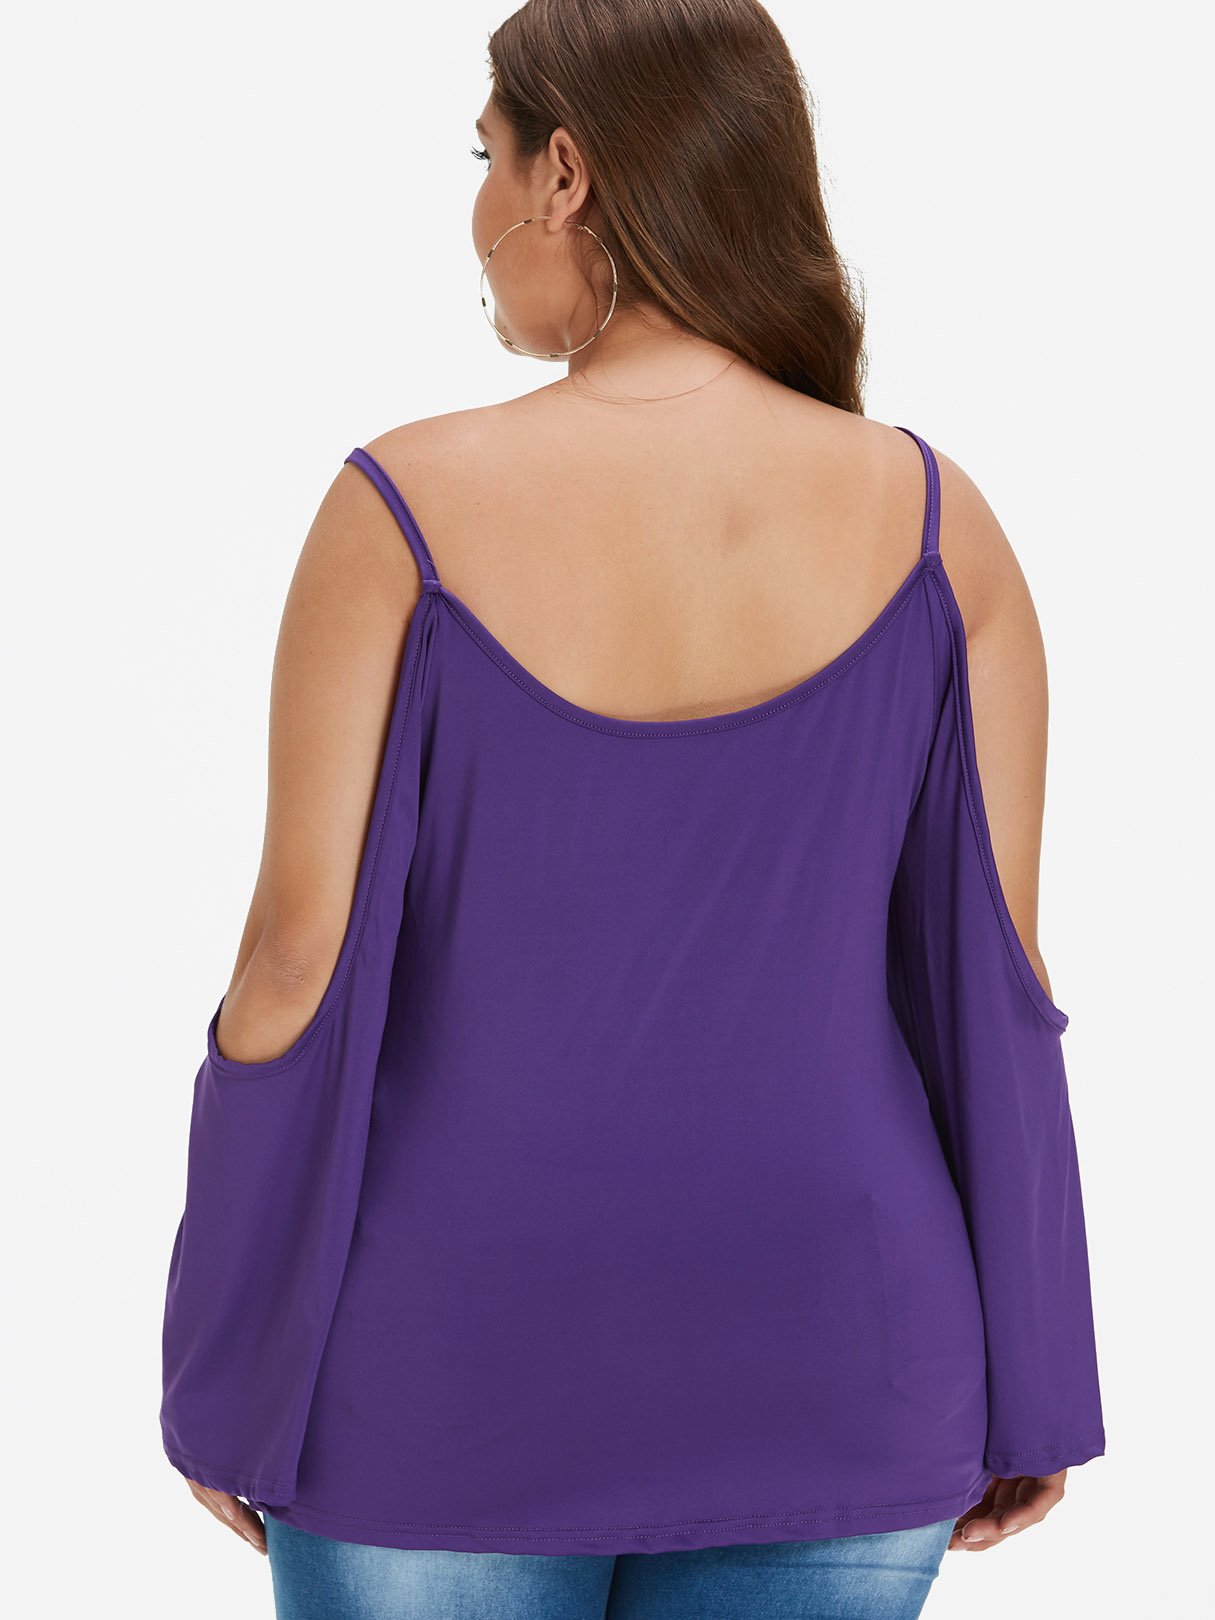 NEW FEELING Womens Purple Plus Size Tops